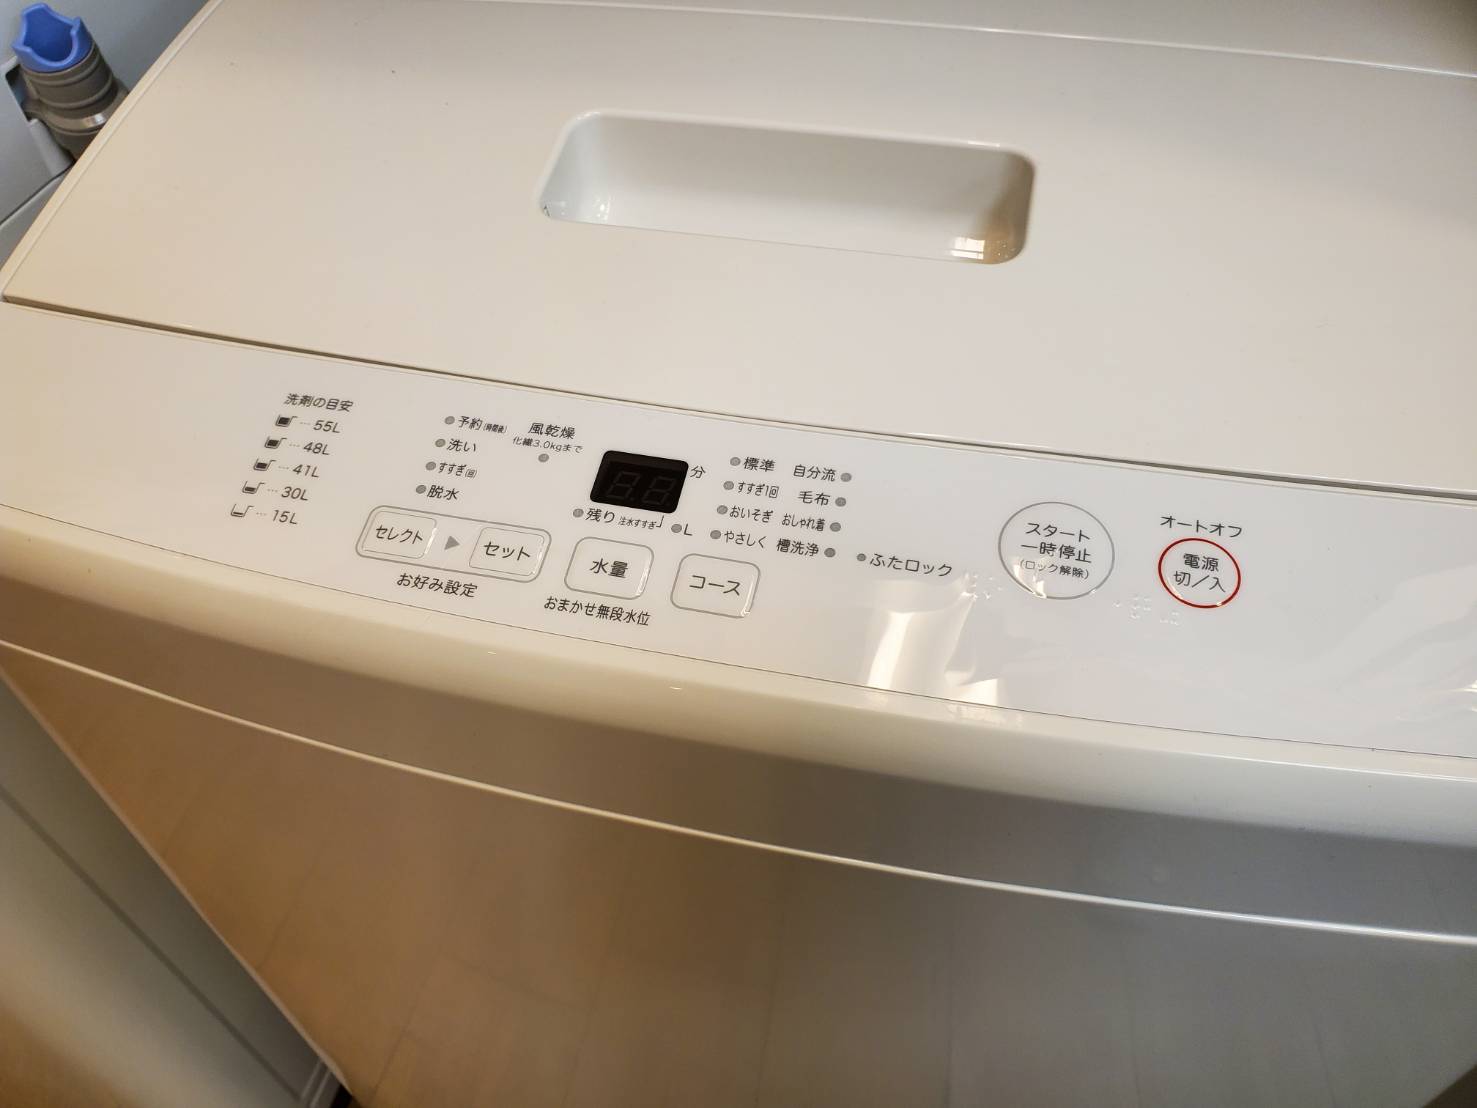 2015美品★無印良品☆4.5kg☆全自動洗濯機【AQW-MJ45】P377